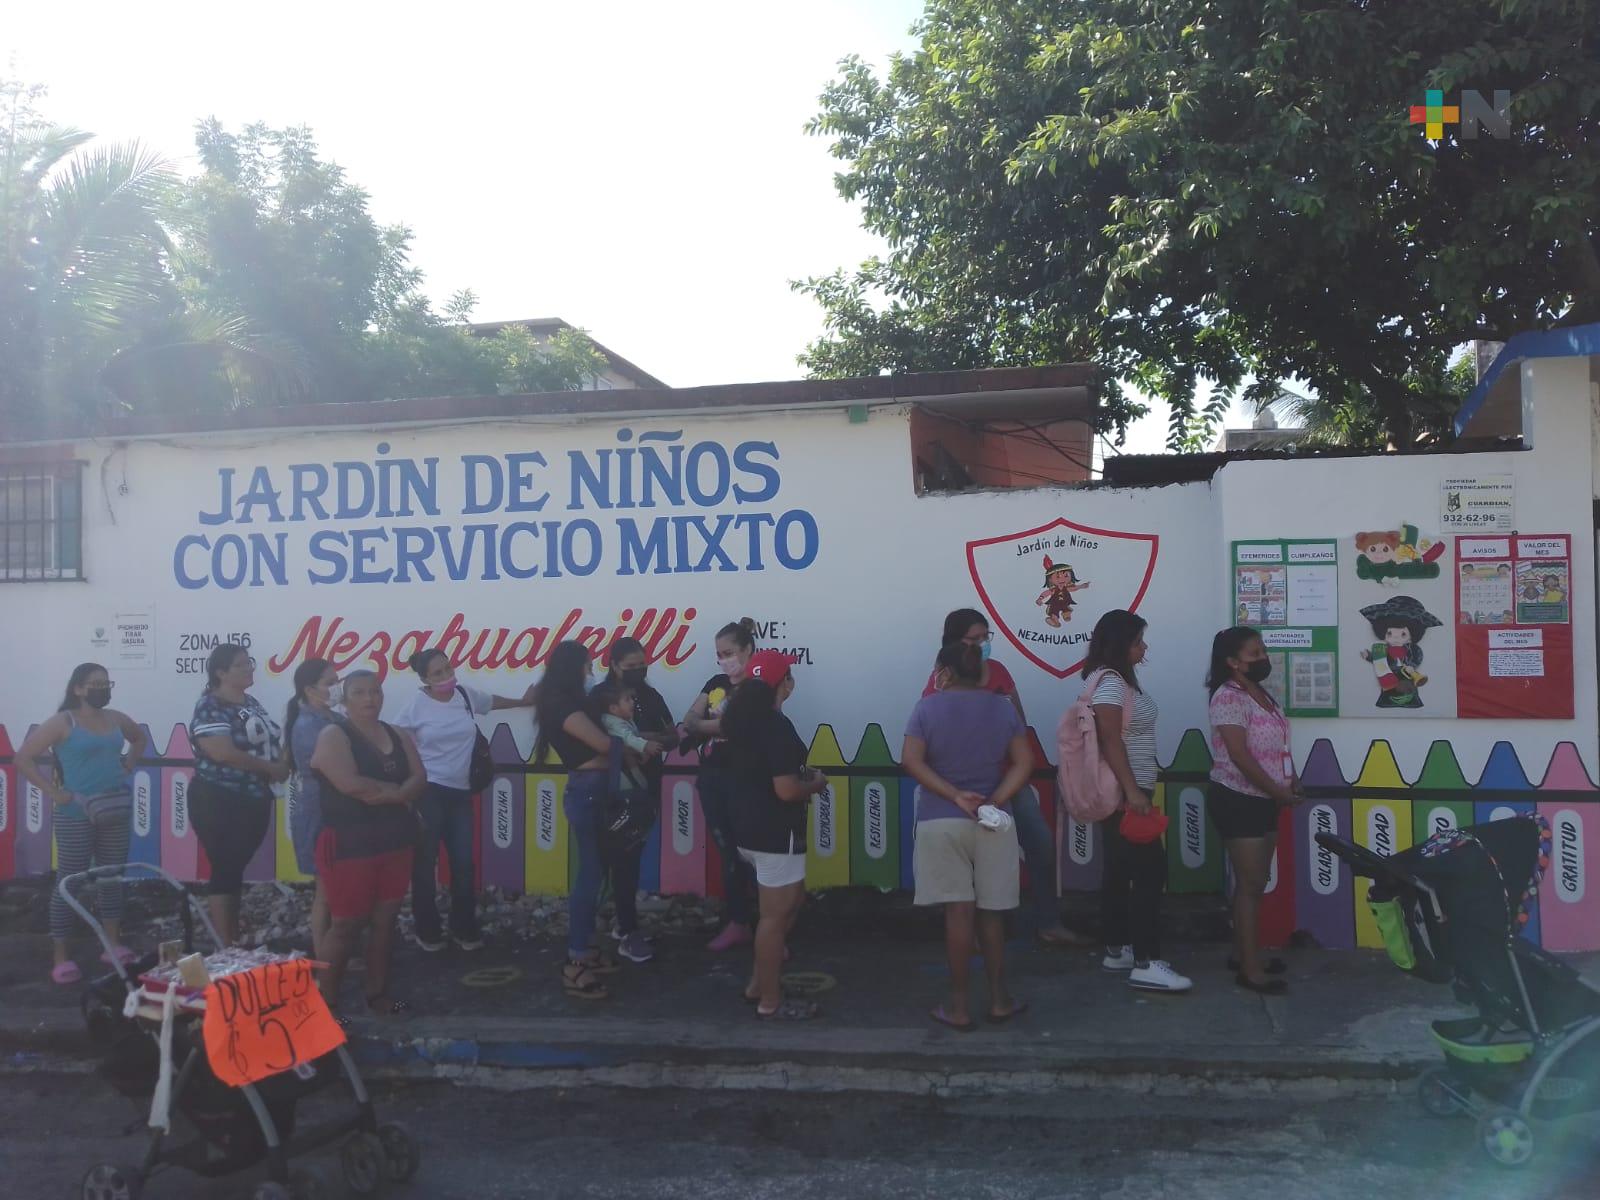 Mal estado de calle provoca accidentes en jardín de niños de Veracruz puerto